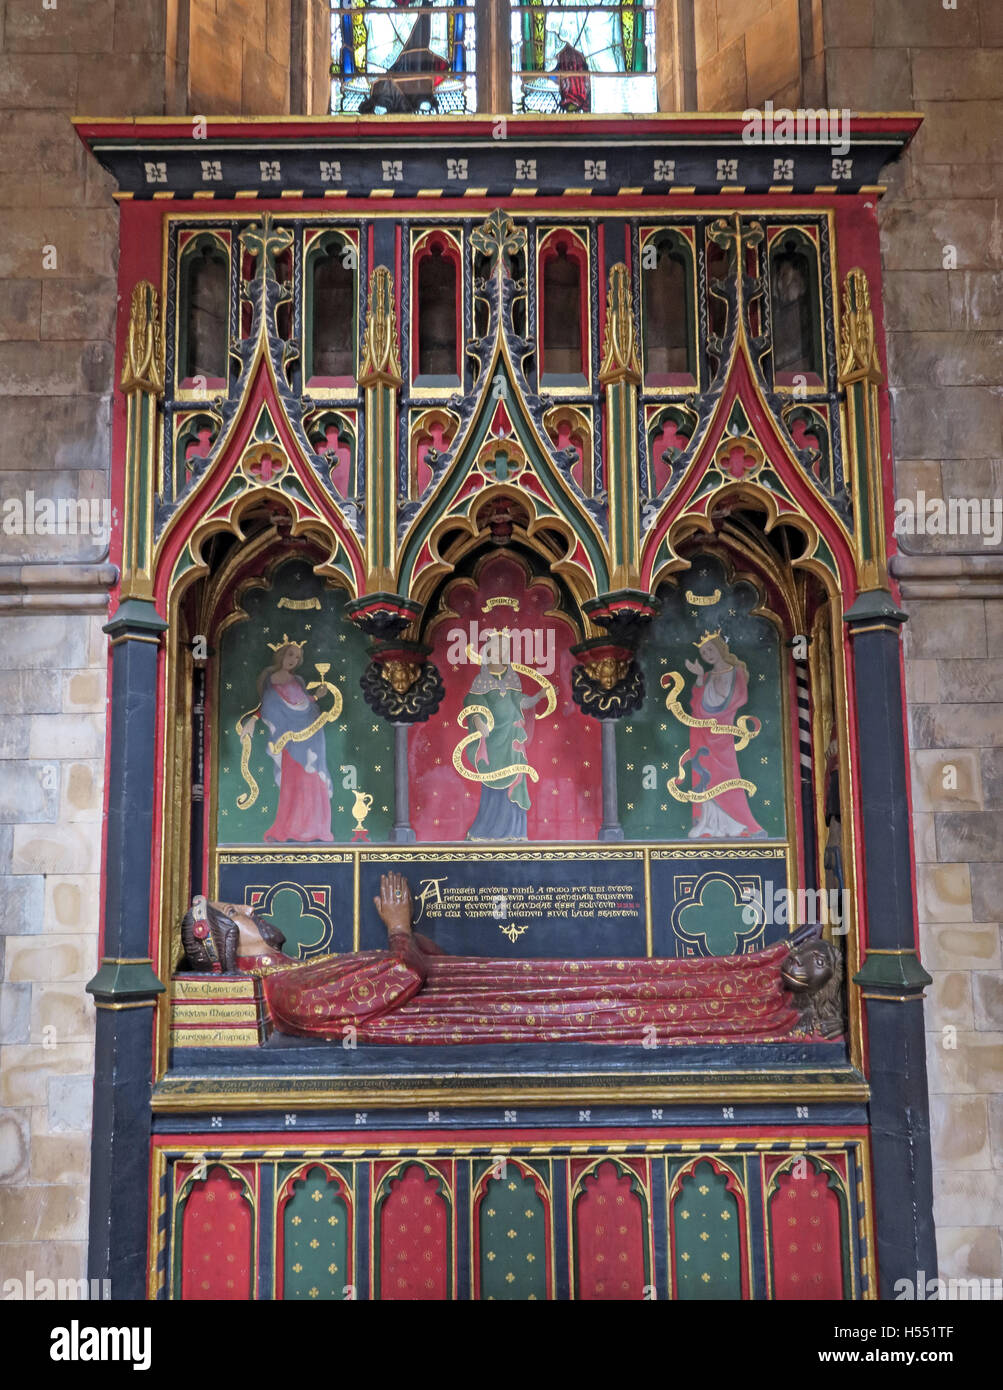 Tombe de John Gower, cathédrale de Southwark, Londres, Angleterre, Royaume-Uni Banque D'Images